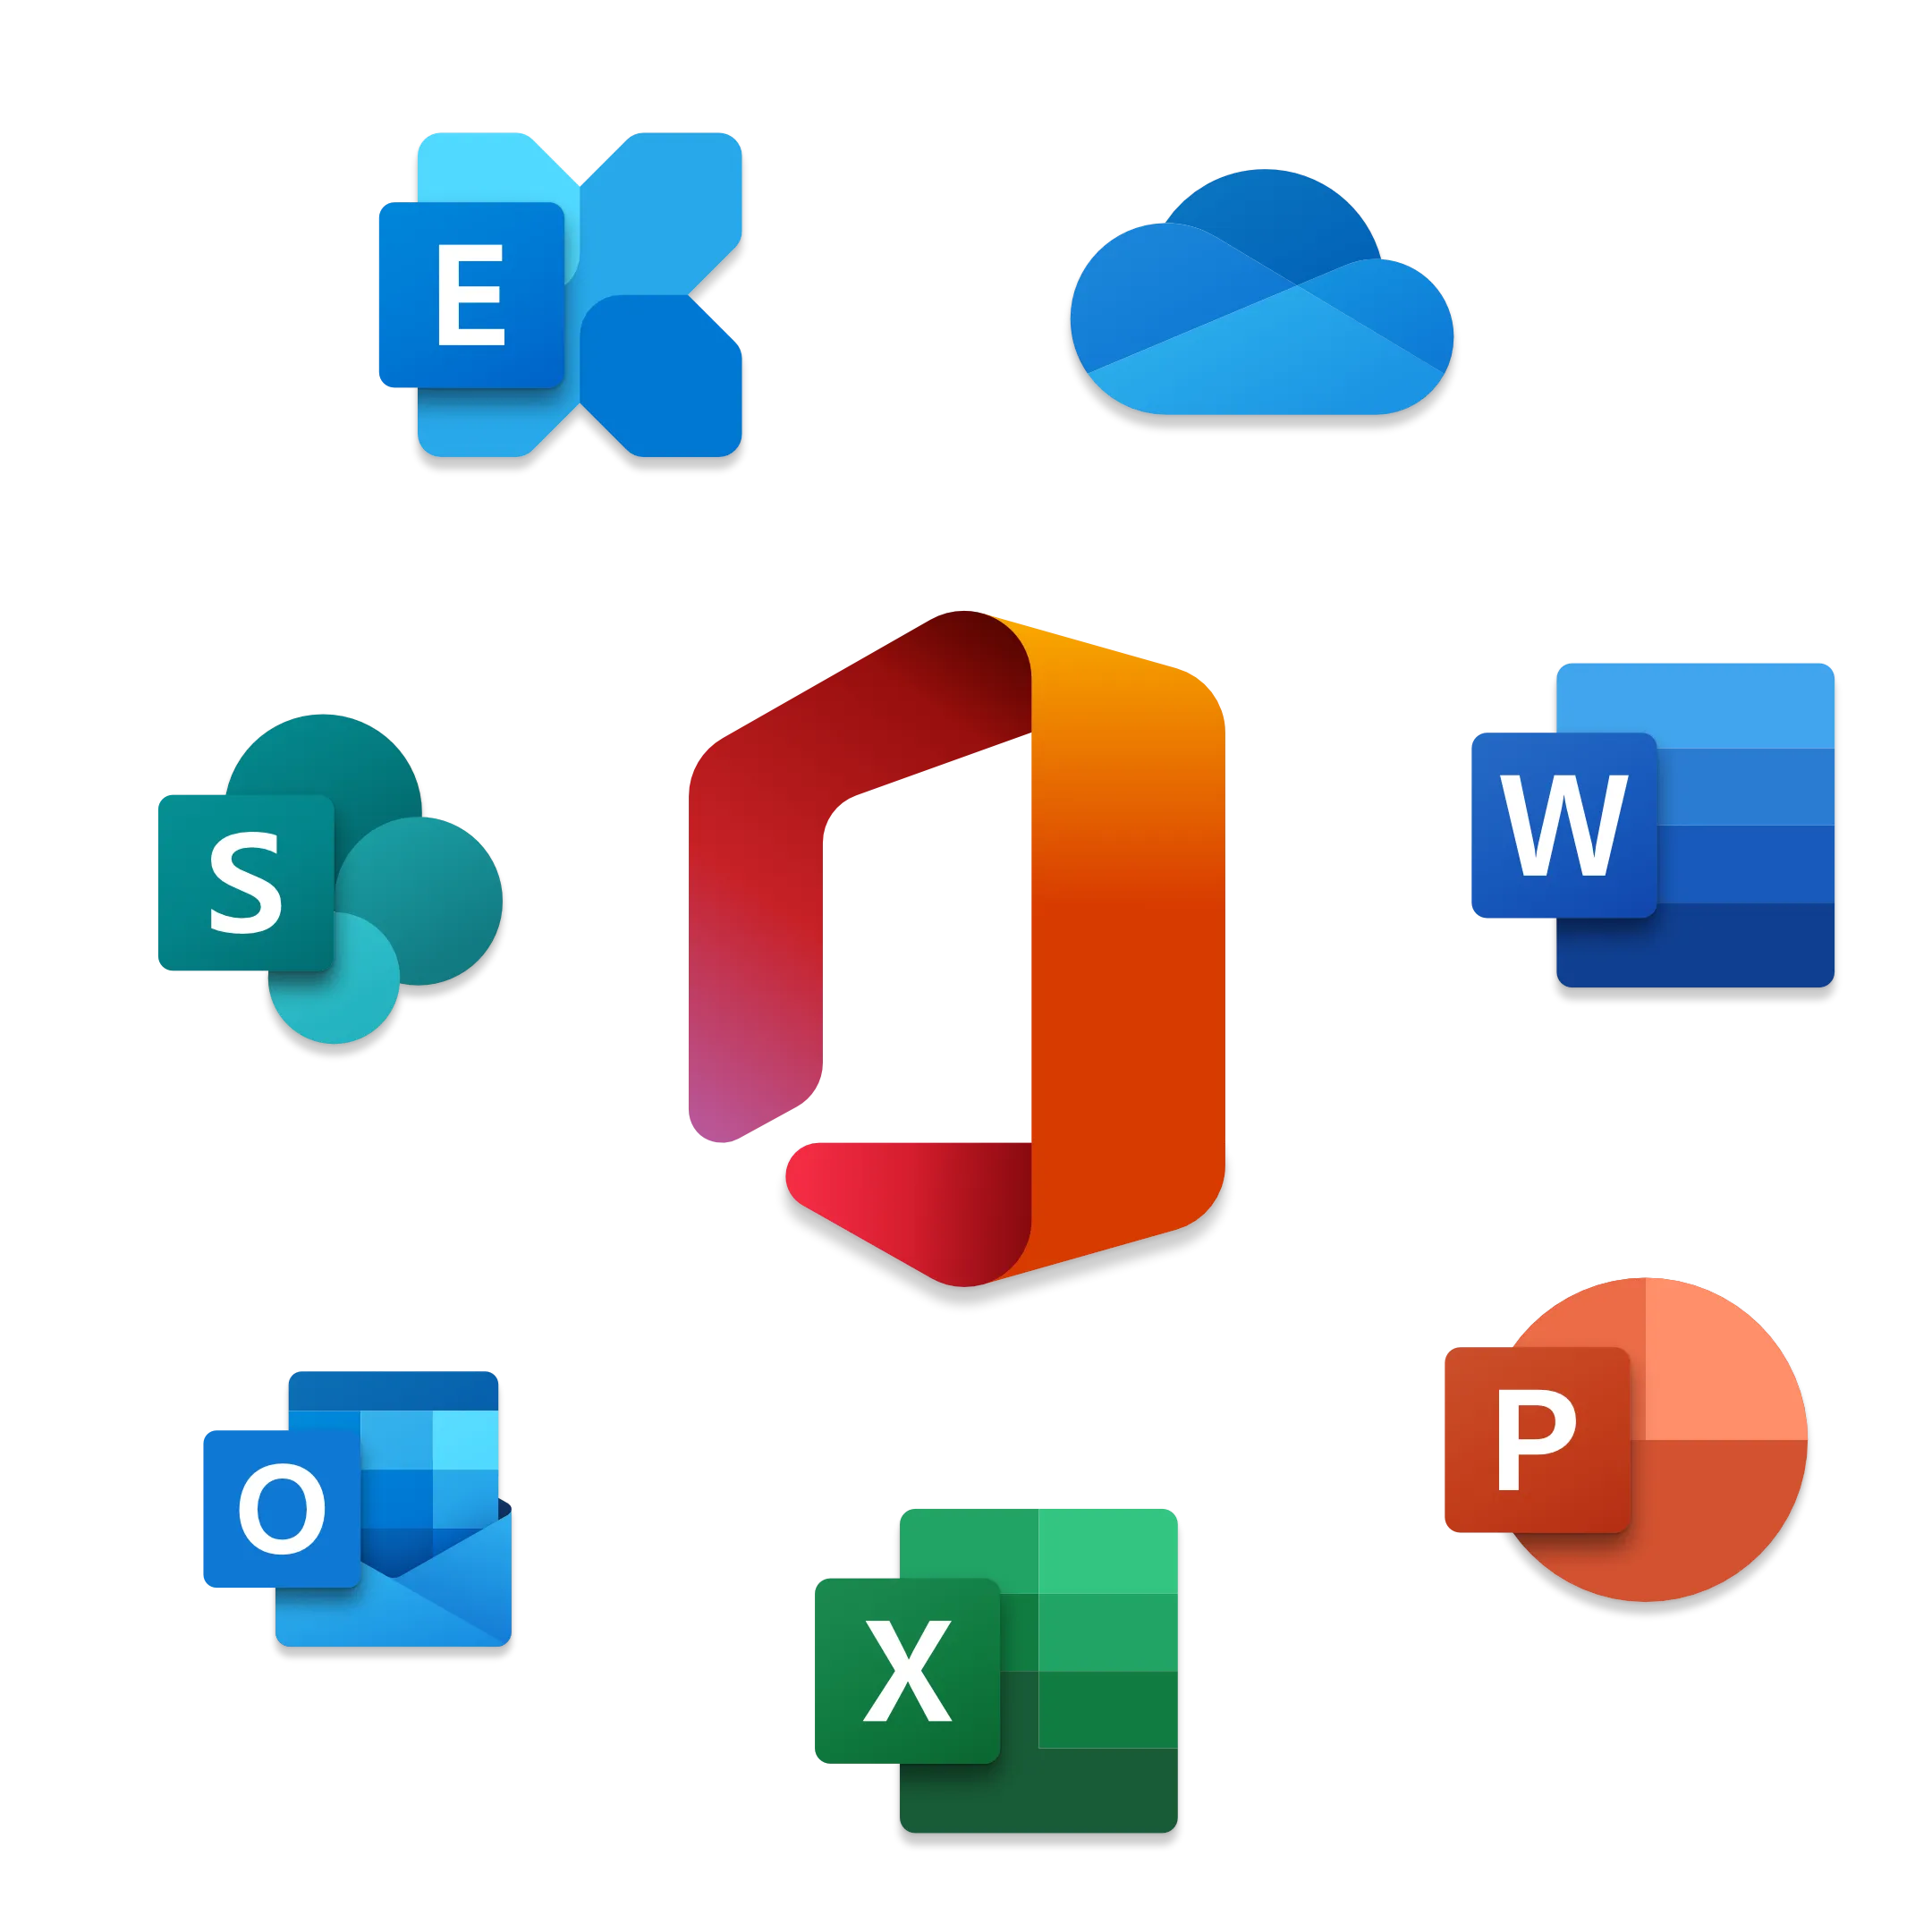 Microsoft-365 Icon als Darstellung für die Möglichkeiten wie Excel, Word, PowerPoint, etc.